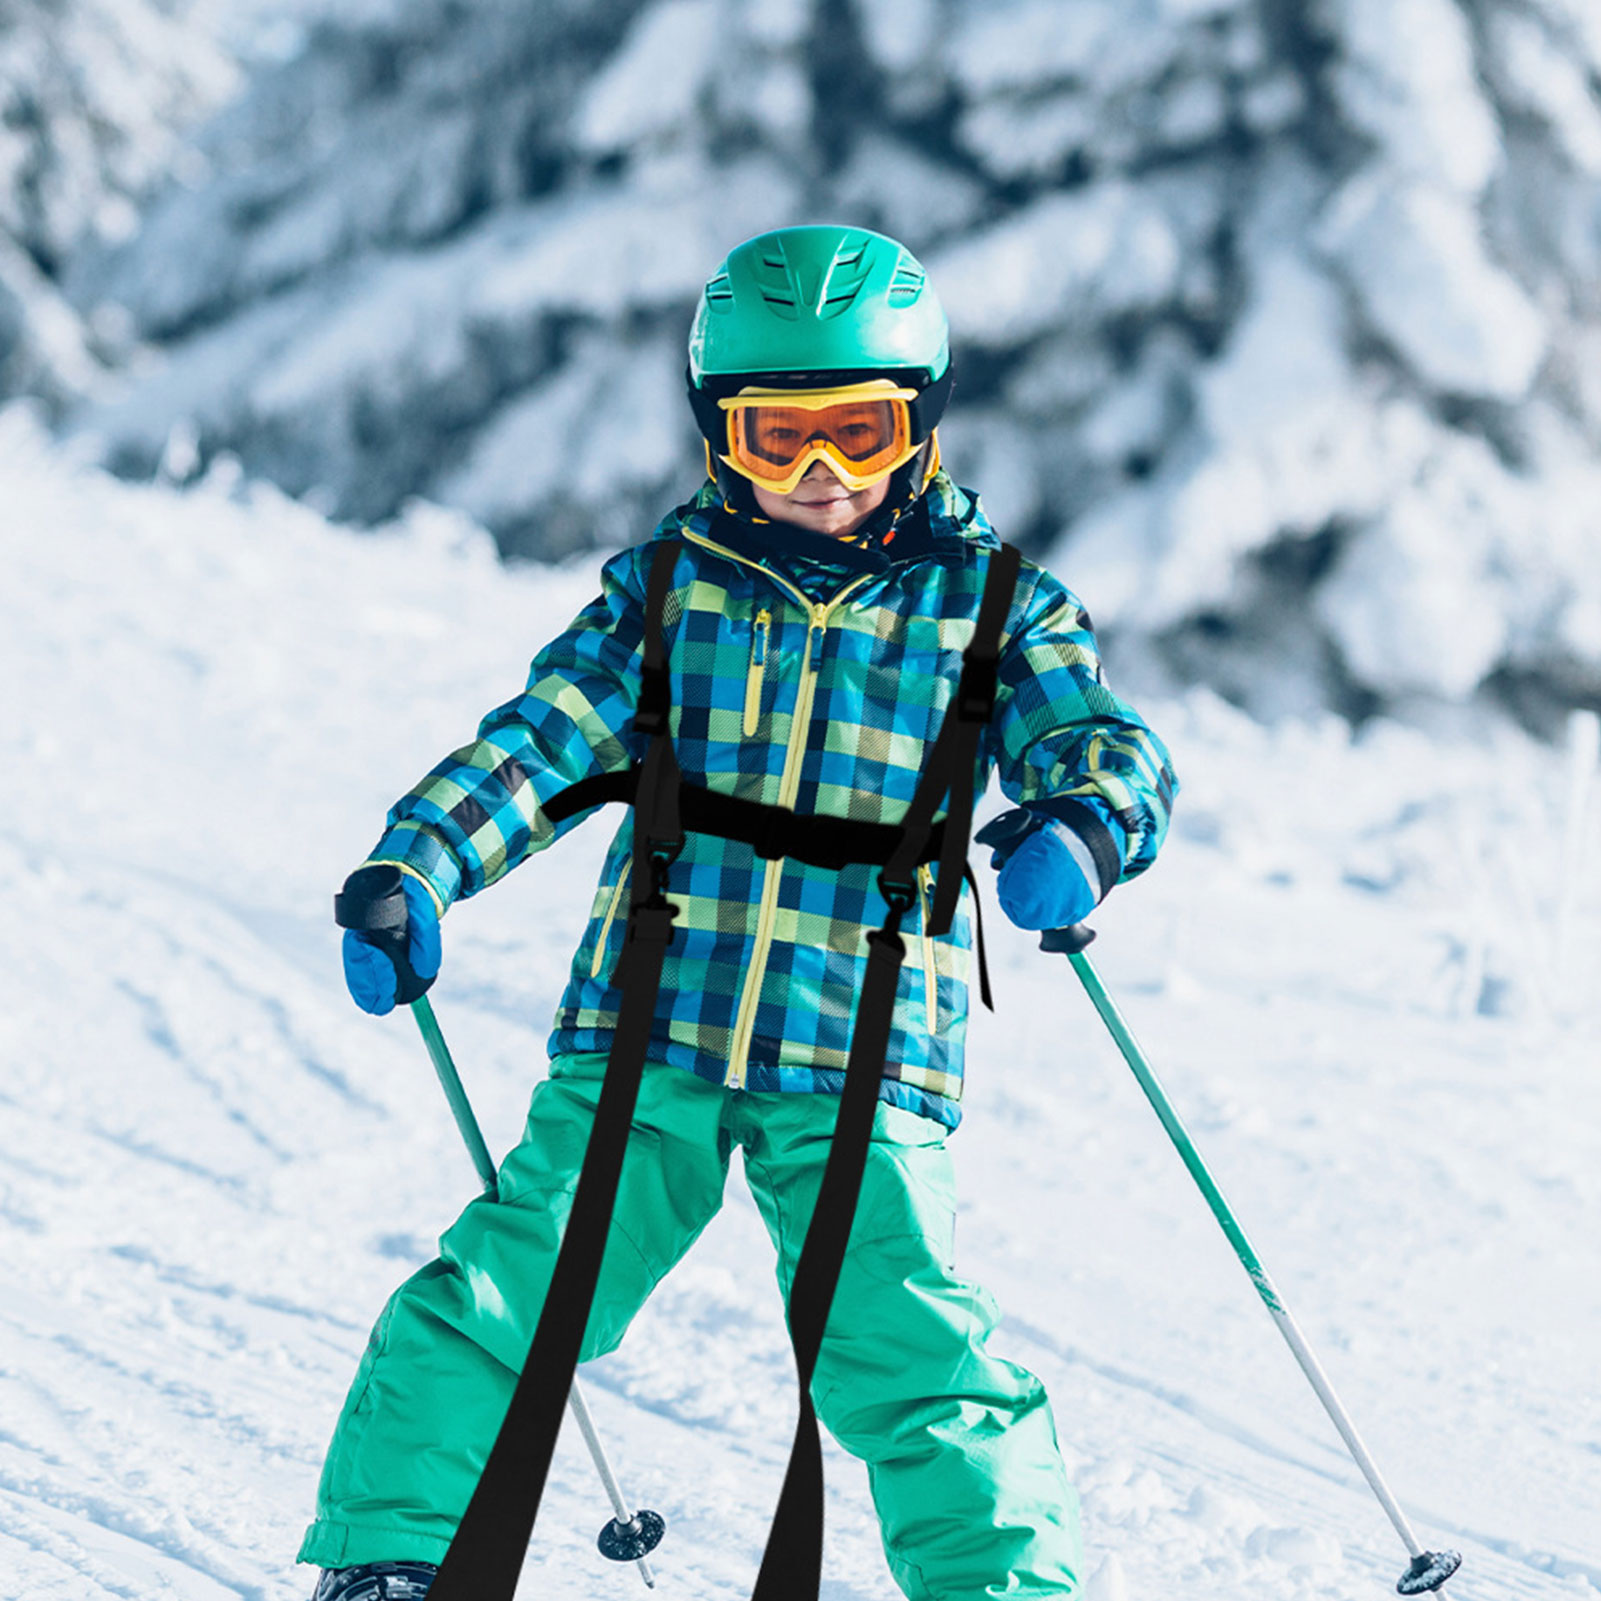  Ű ϳ׽   Ʈ̴ ϳ׽ Ű Ʈ̴ Ʈ Copilot Lift Ski Halter Safety Belts Adjustable